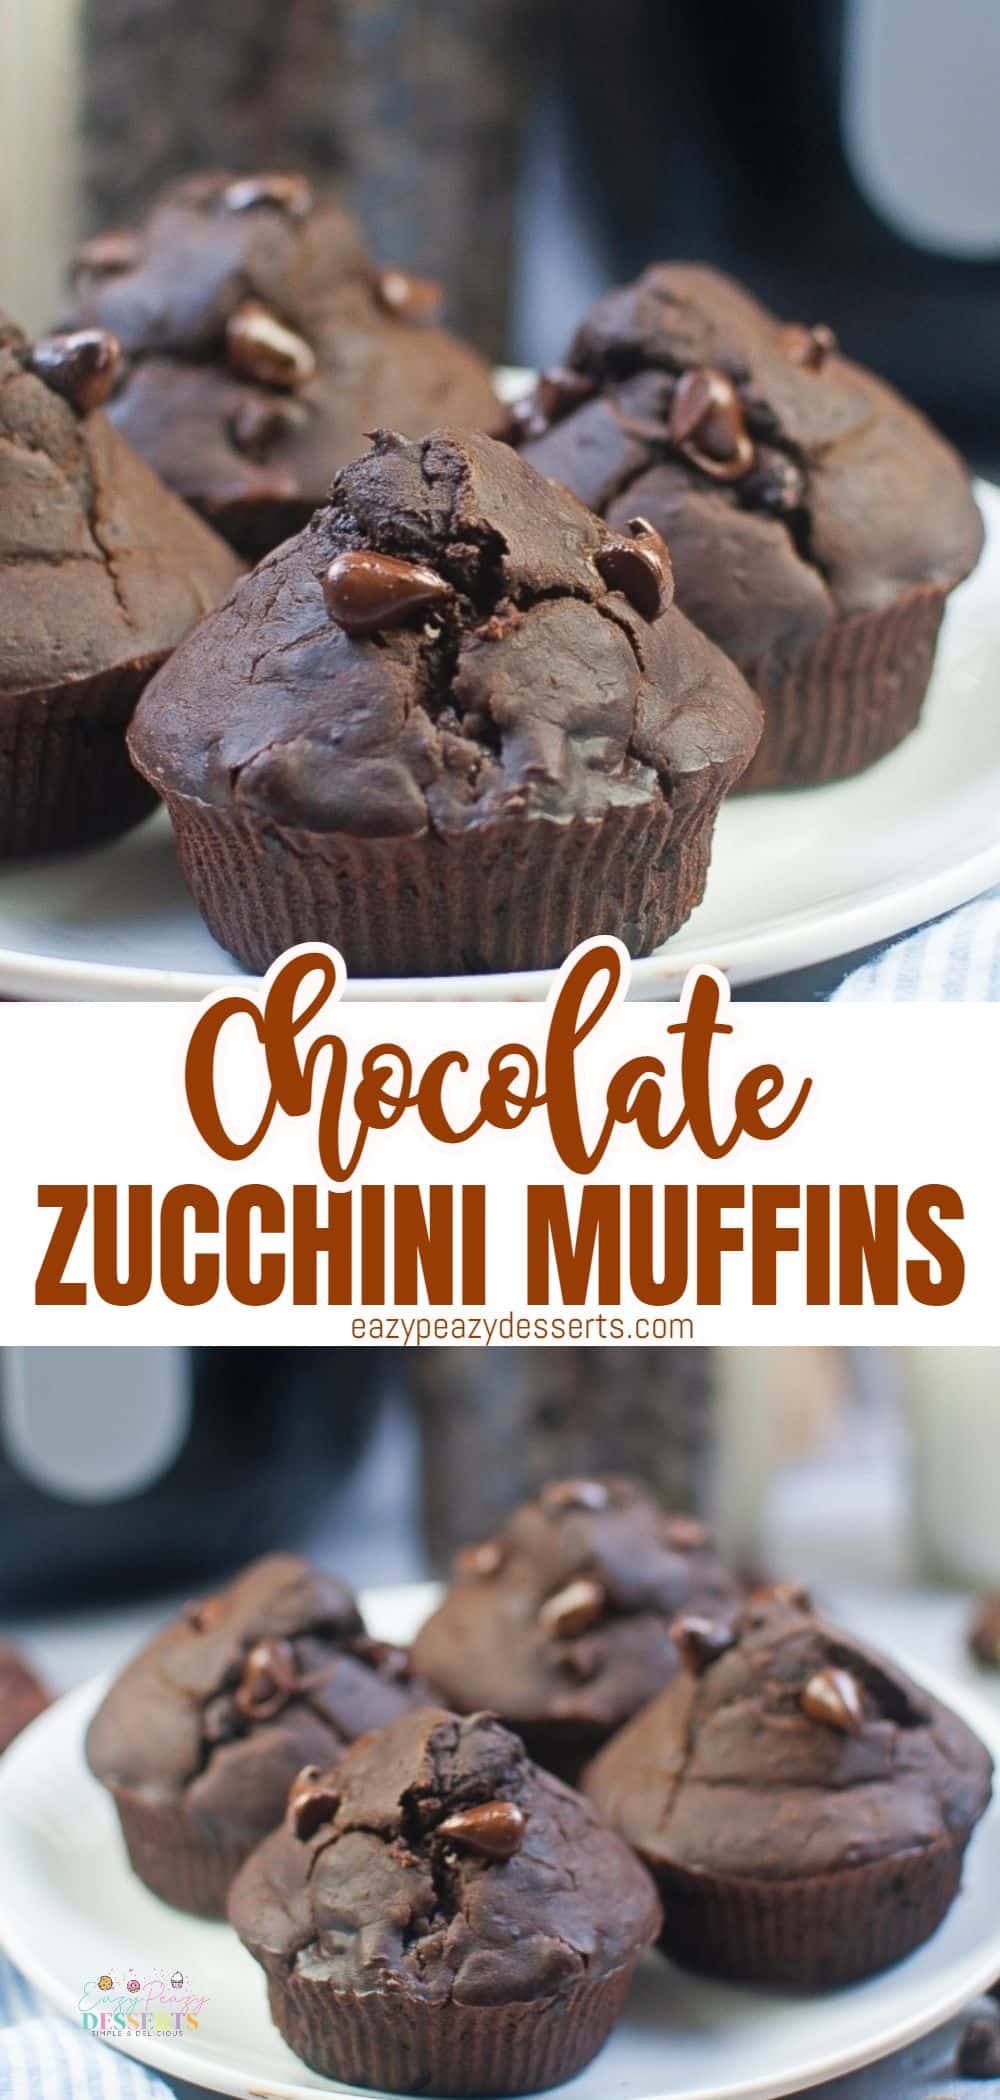 Chocolate zucchini muffins in air fryer